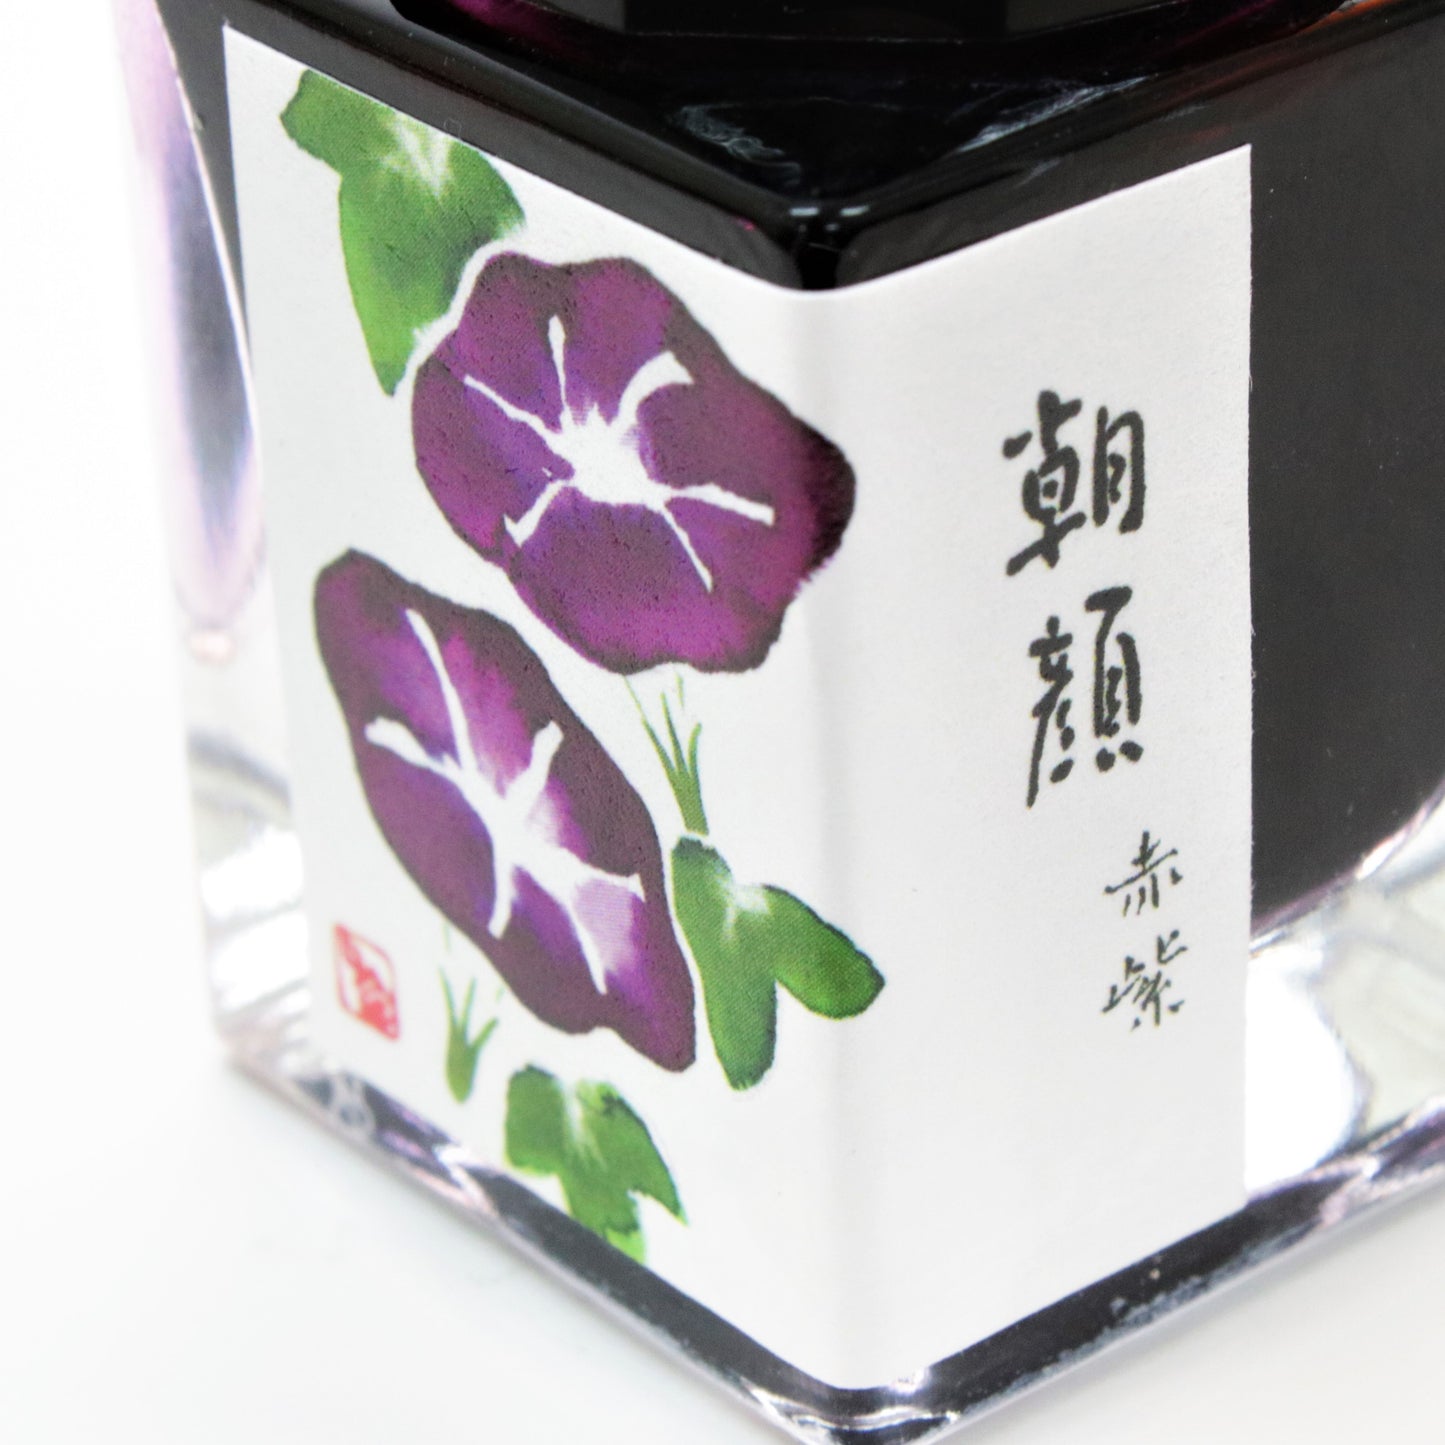 特別生産品 BUNGUBOXオリジナルインク【朝顔】"赤紫"＆"青紫"